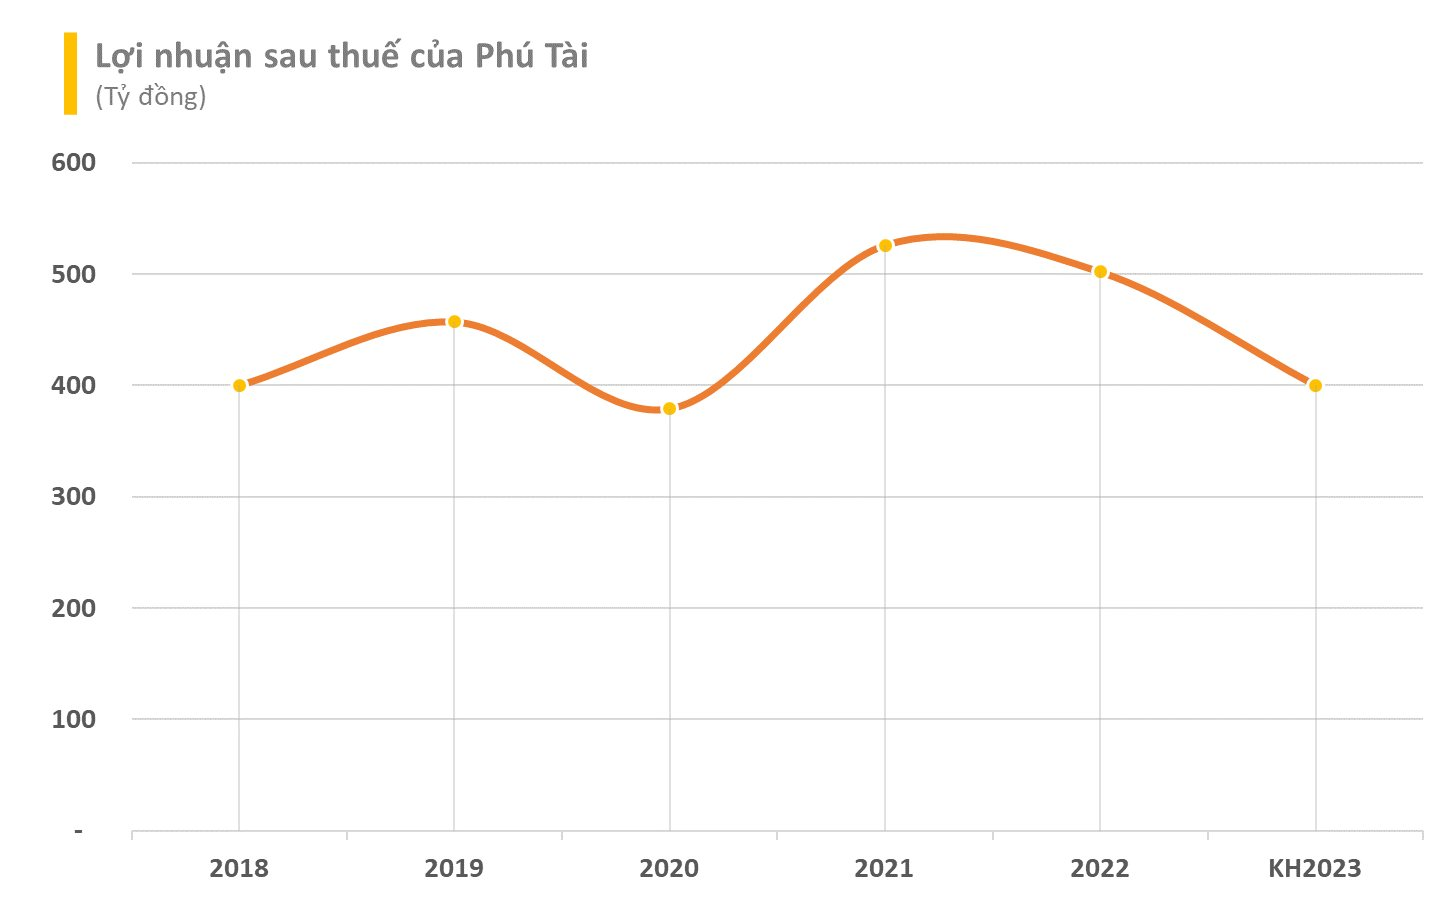 Xuất khẩu gặp khó, loạt tên tuổi lớn Vĩnh Hoàn, May Thành Công, Phú Tài,...đồng loạt đặt kế hoạch kinh doanh 2023 giảm sâu - Ảnh 4.